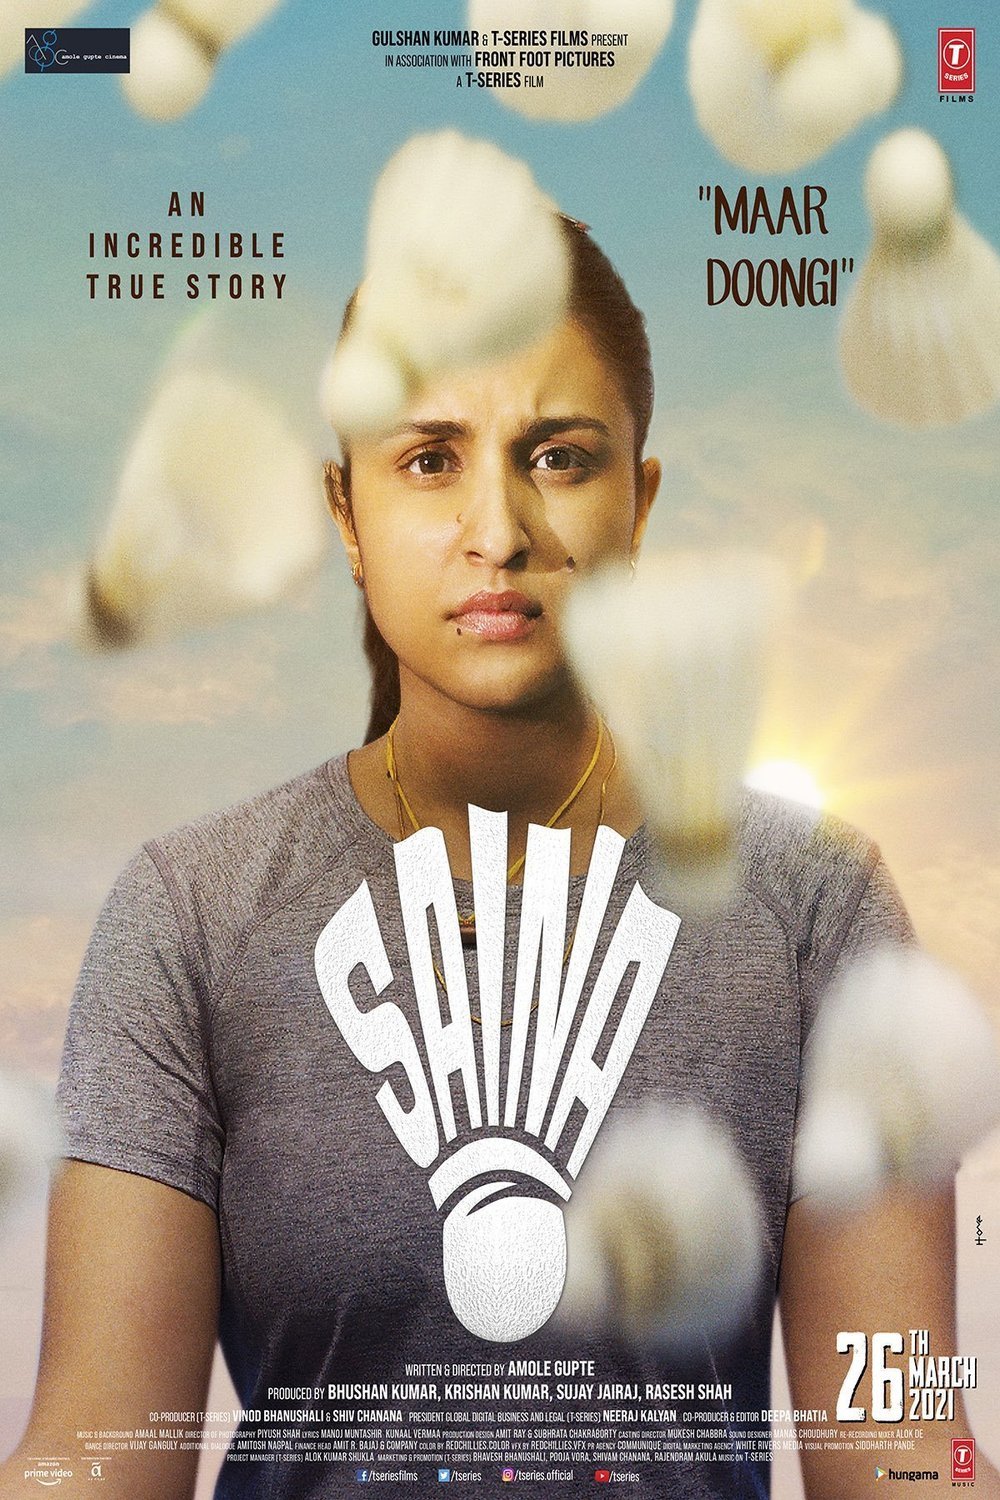 Hindi poster of the movie Saina